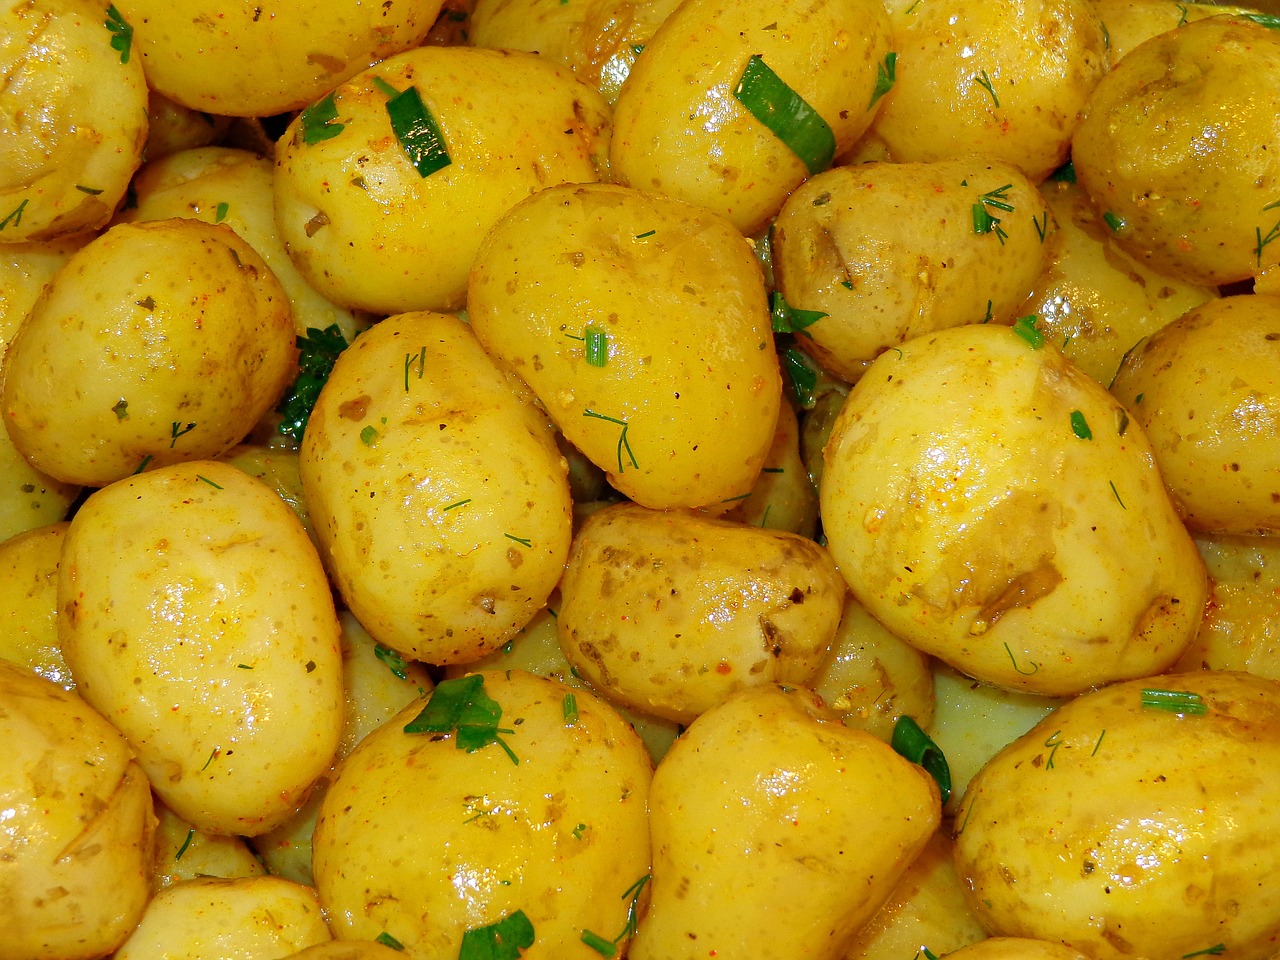 potatoes gd8daf0428 1280